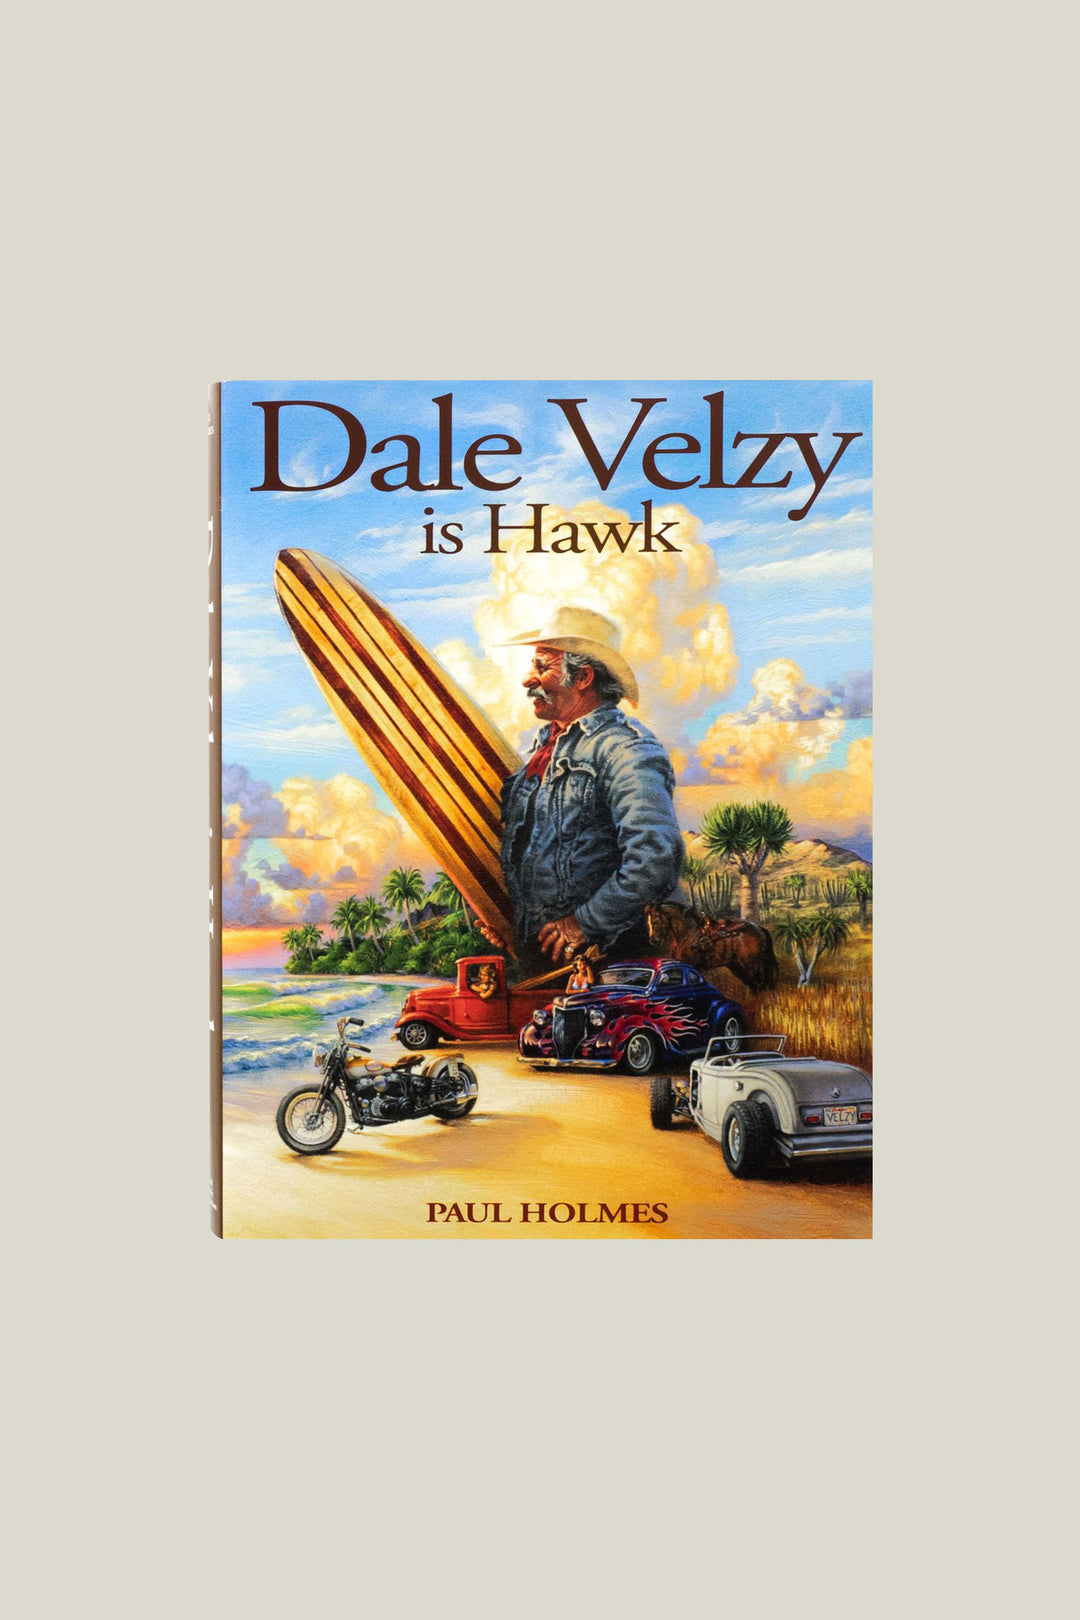 Dale Velzy is Hawk by Paul Holmes